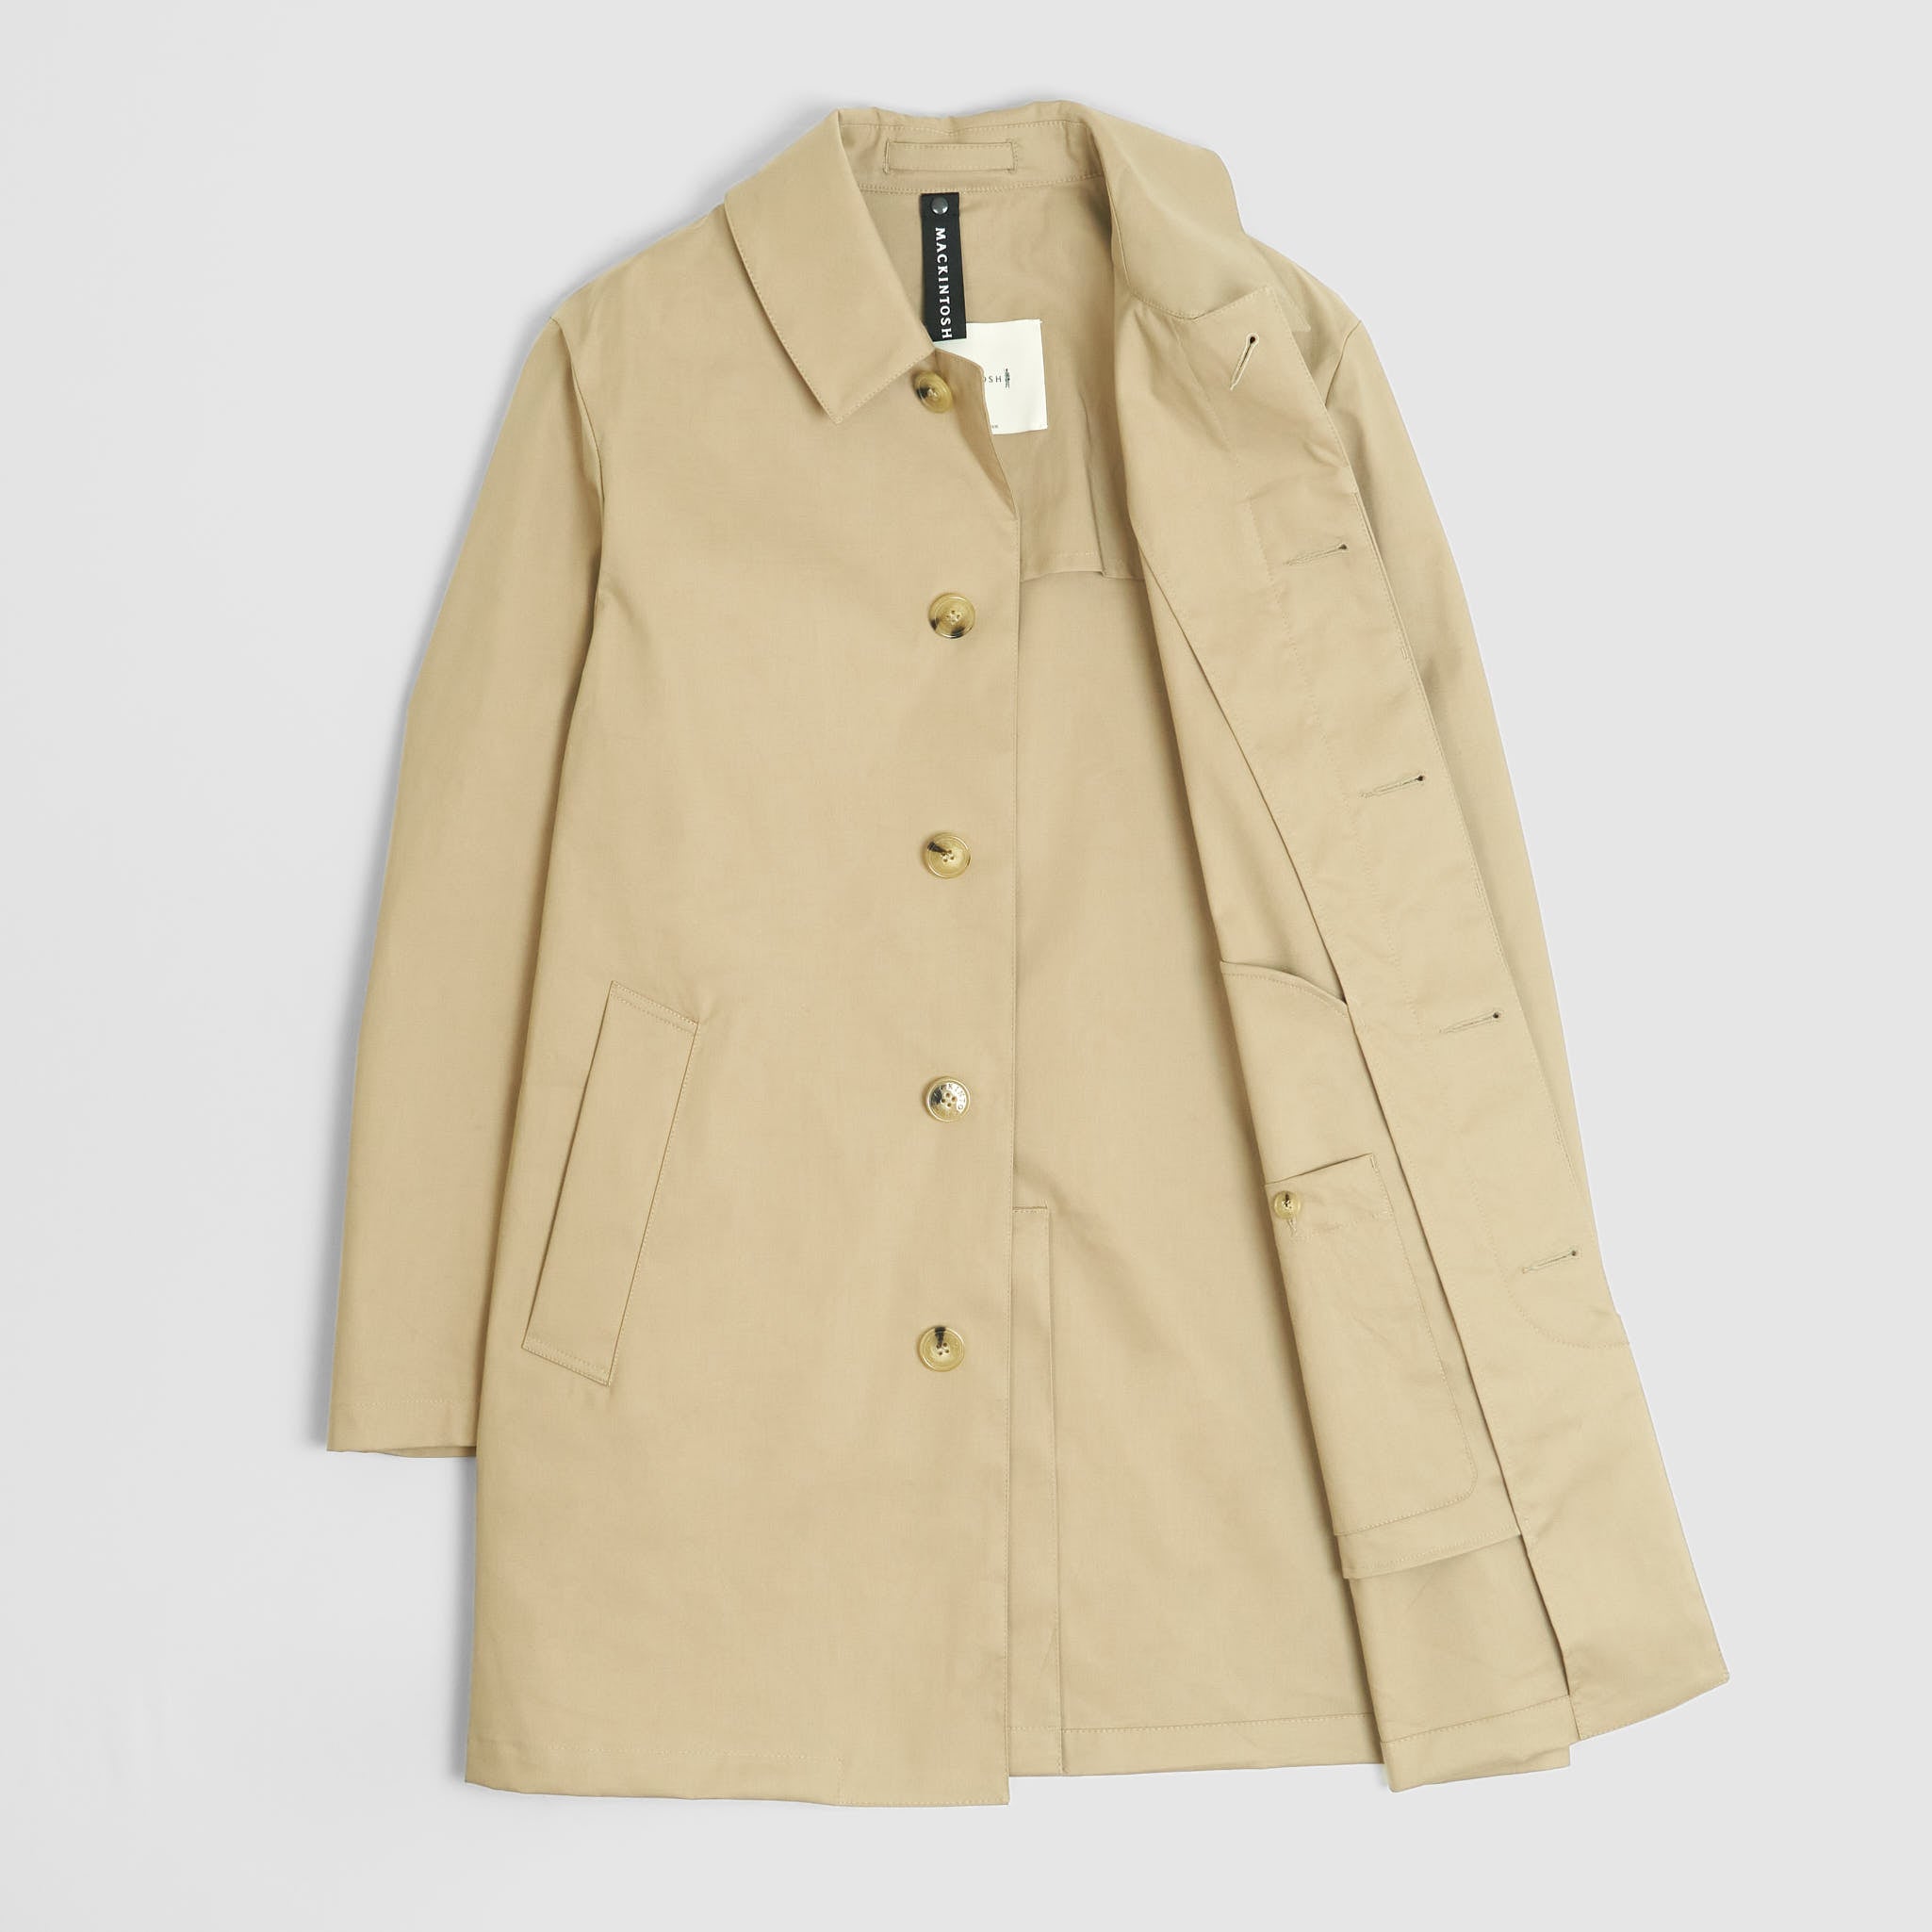 Mackintosh Cambridge Coat - DeeCee style